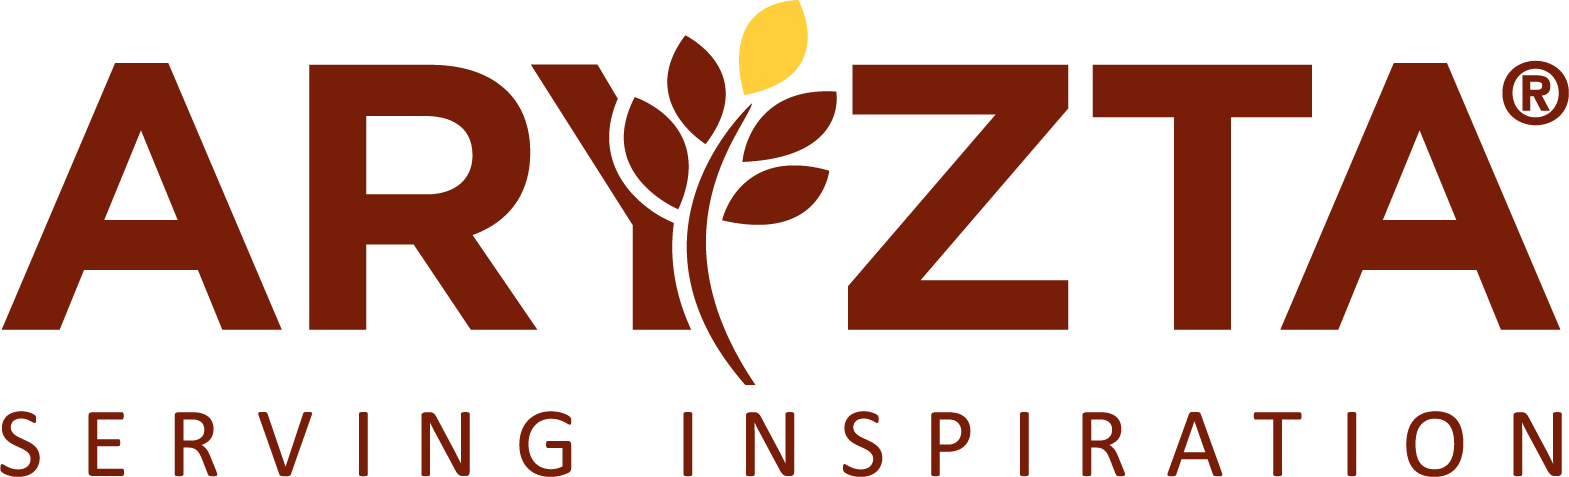 Arytza logo